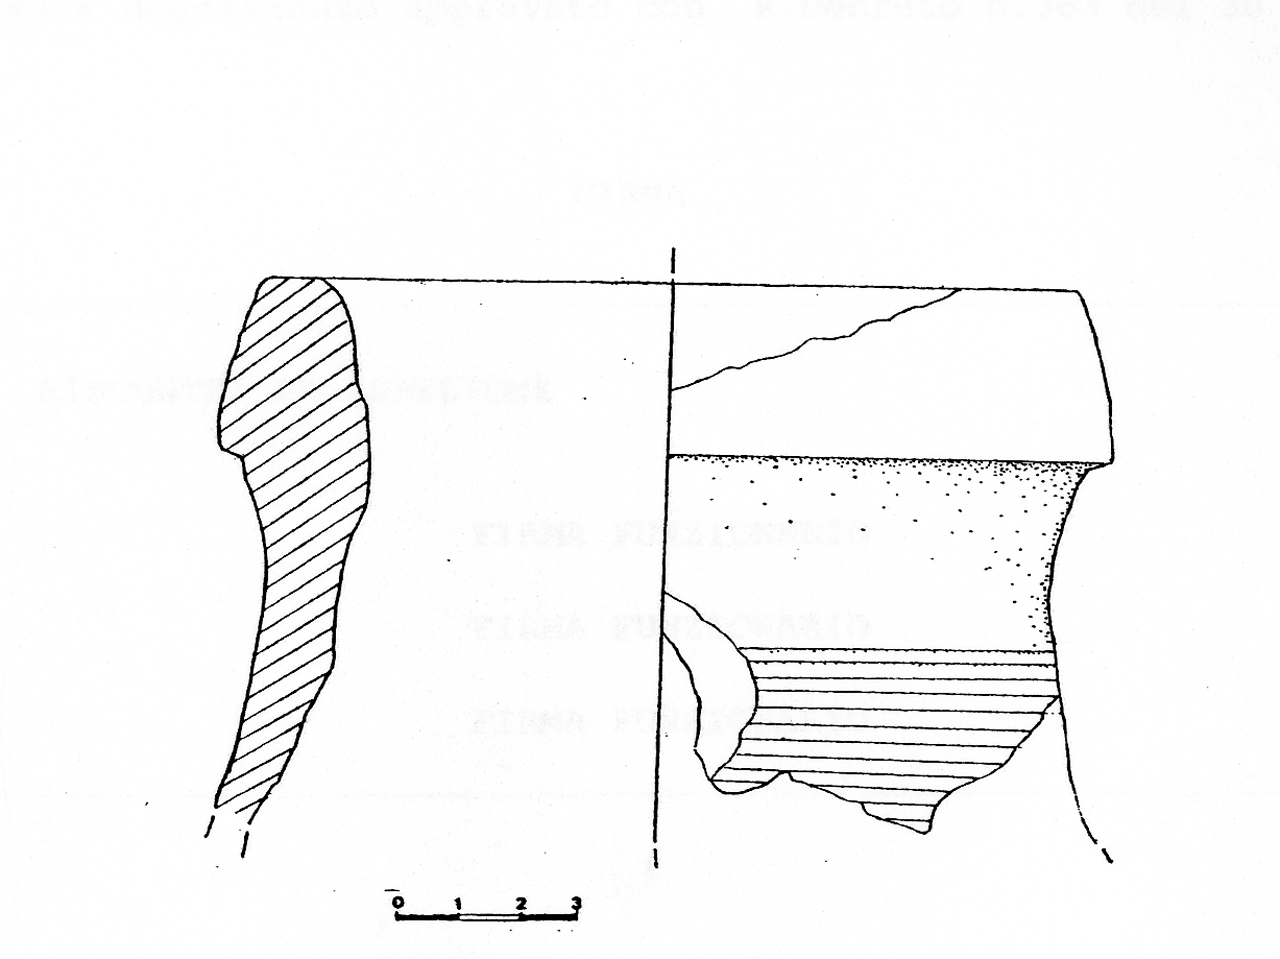 orlo - Locale romanizzato (IV-VII d.C)